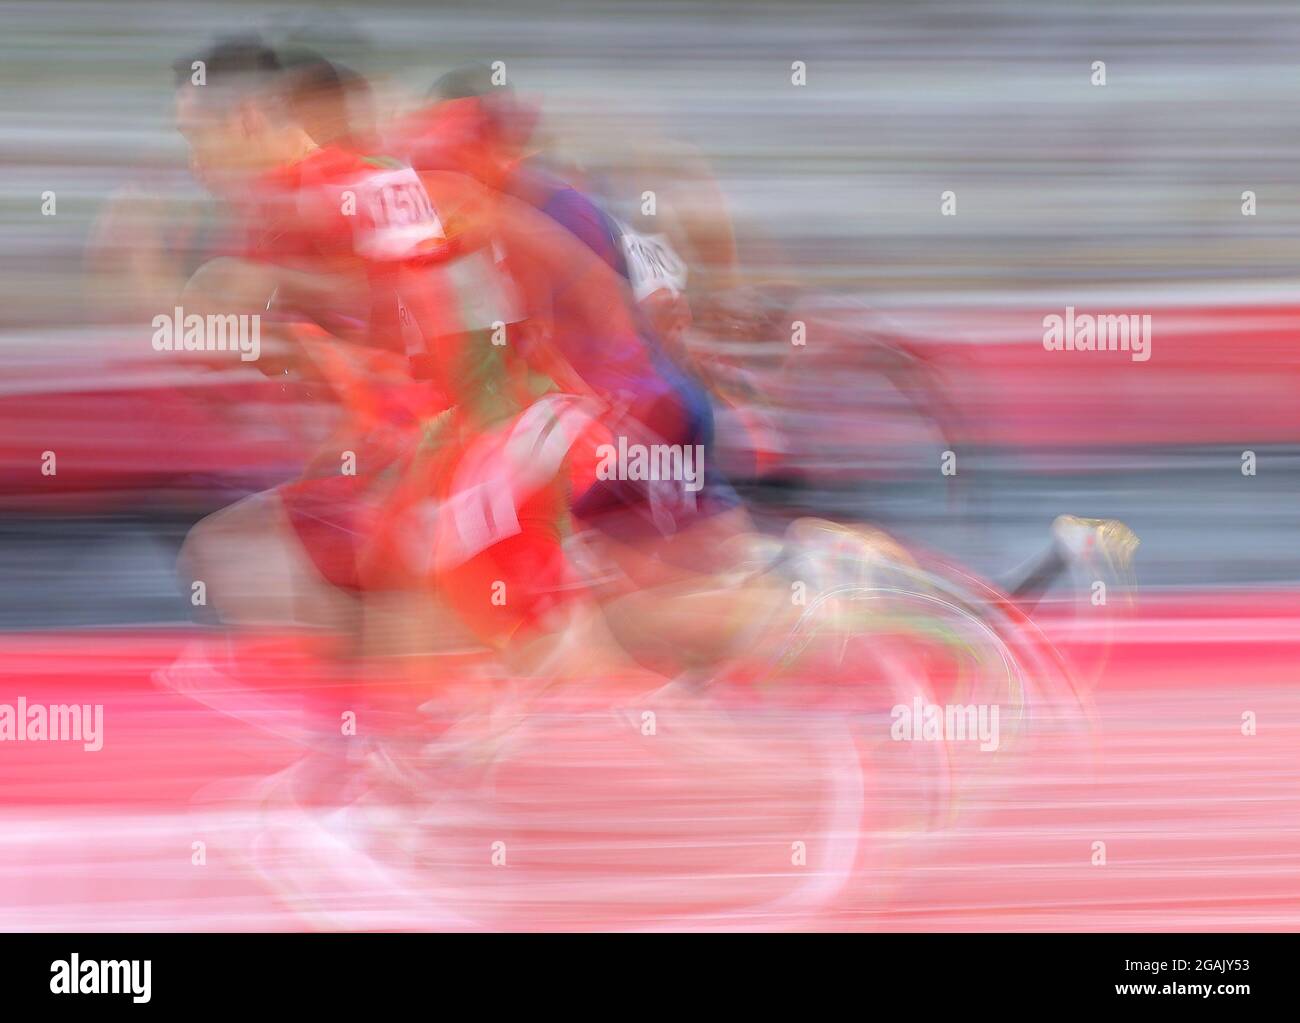 Tokio, Japan. Juli 2021. Wu Zhiqiang aus China tritt bei den Olympischen Spielen 2020 in Tokio, Japan, am 31. Juli 2021 bei den 100-m-Vorläufen der Männer an. Quelle: Li Ming/Xinhua/Alamy Live News Stockfoto